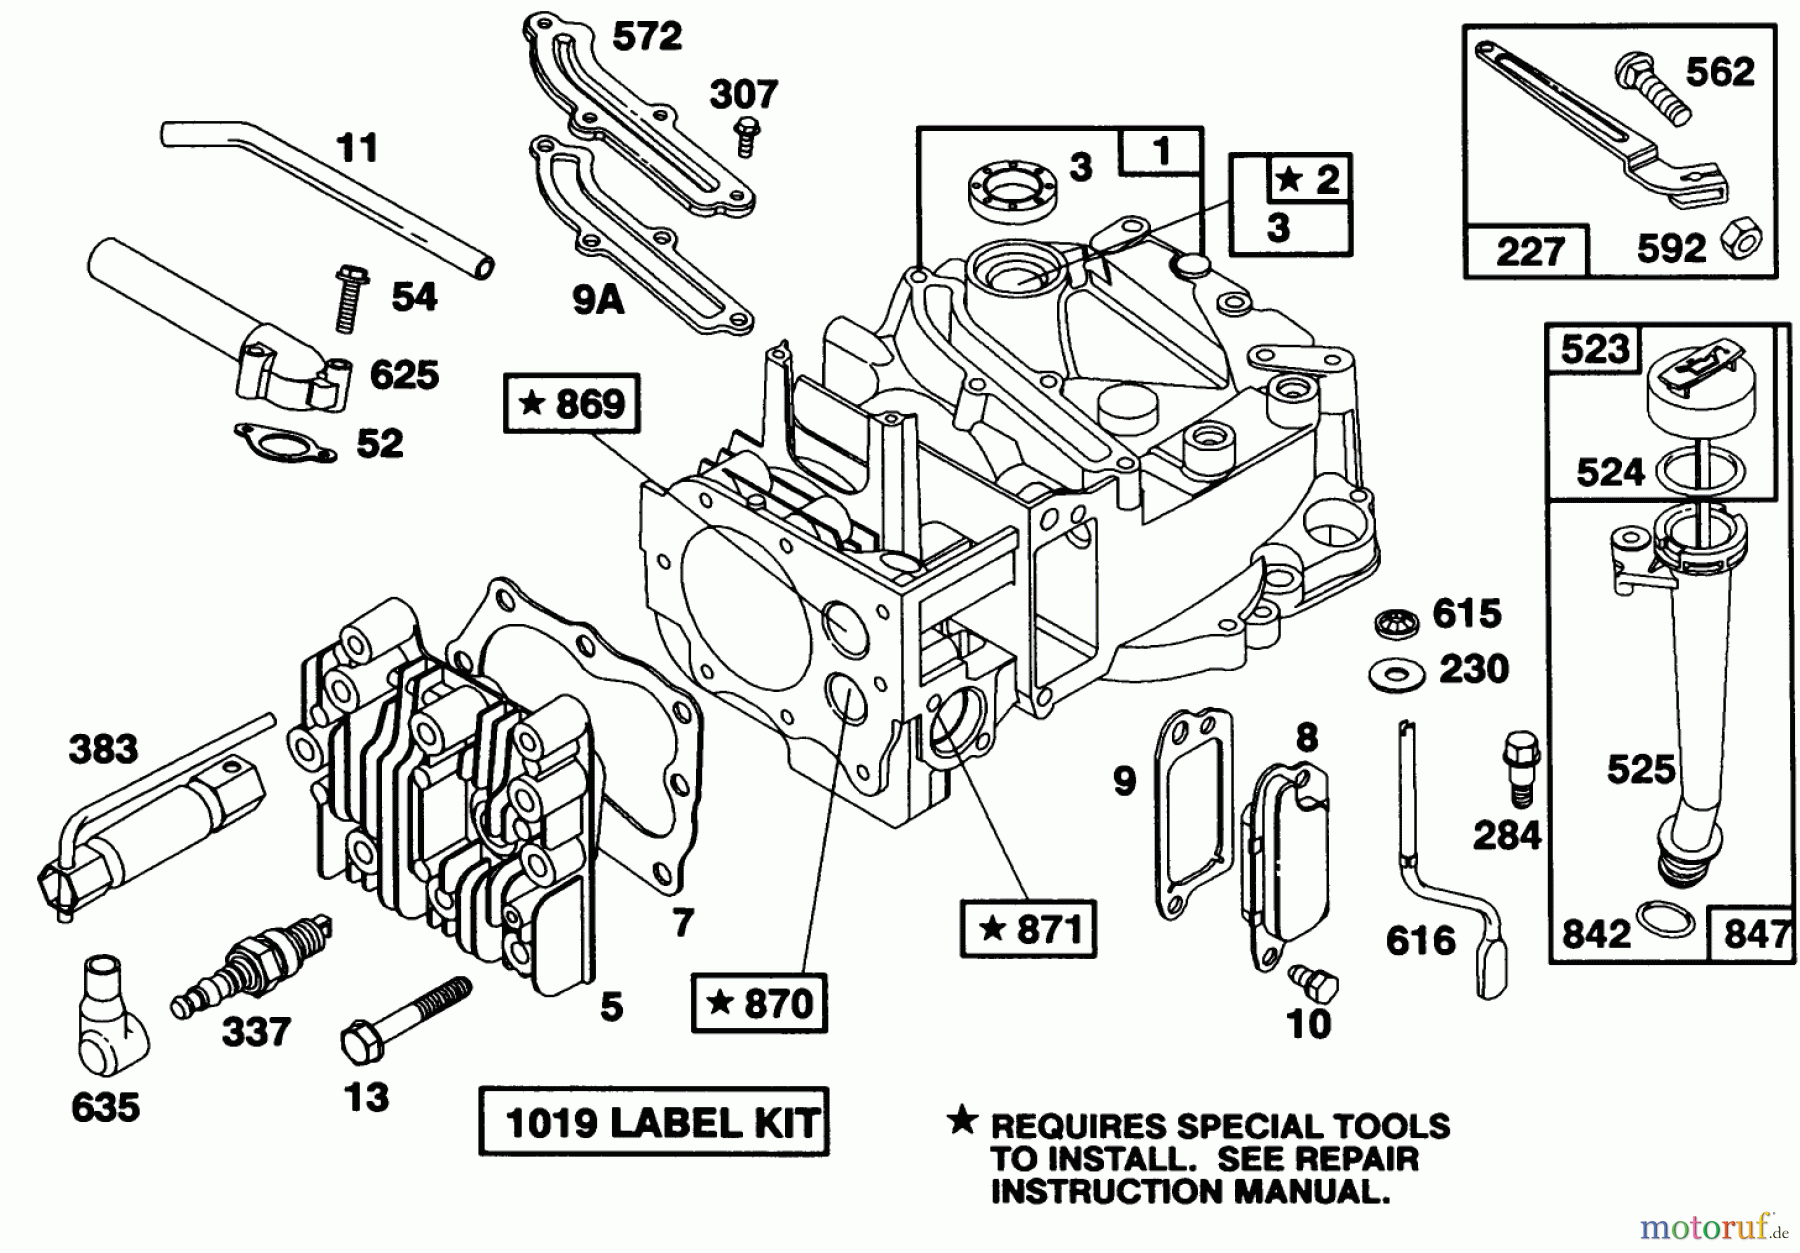  Toro Neu Mowers, Walk-Behind Seite 1 20216 - Toro Lawnmower, 1991 (1000001-1999999) ENGINE BRIGGS & STRATTON MODEL 122702-3171-01 #1